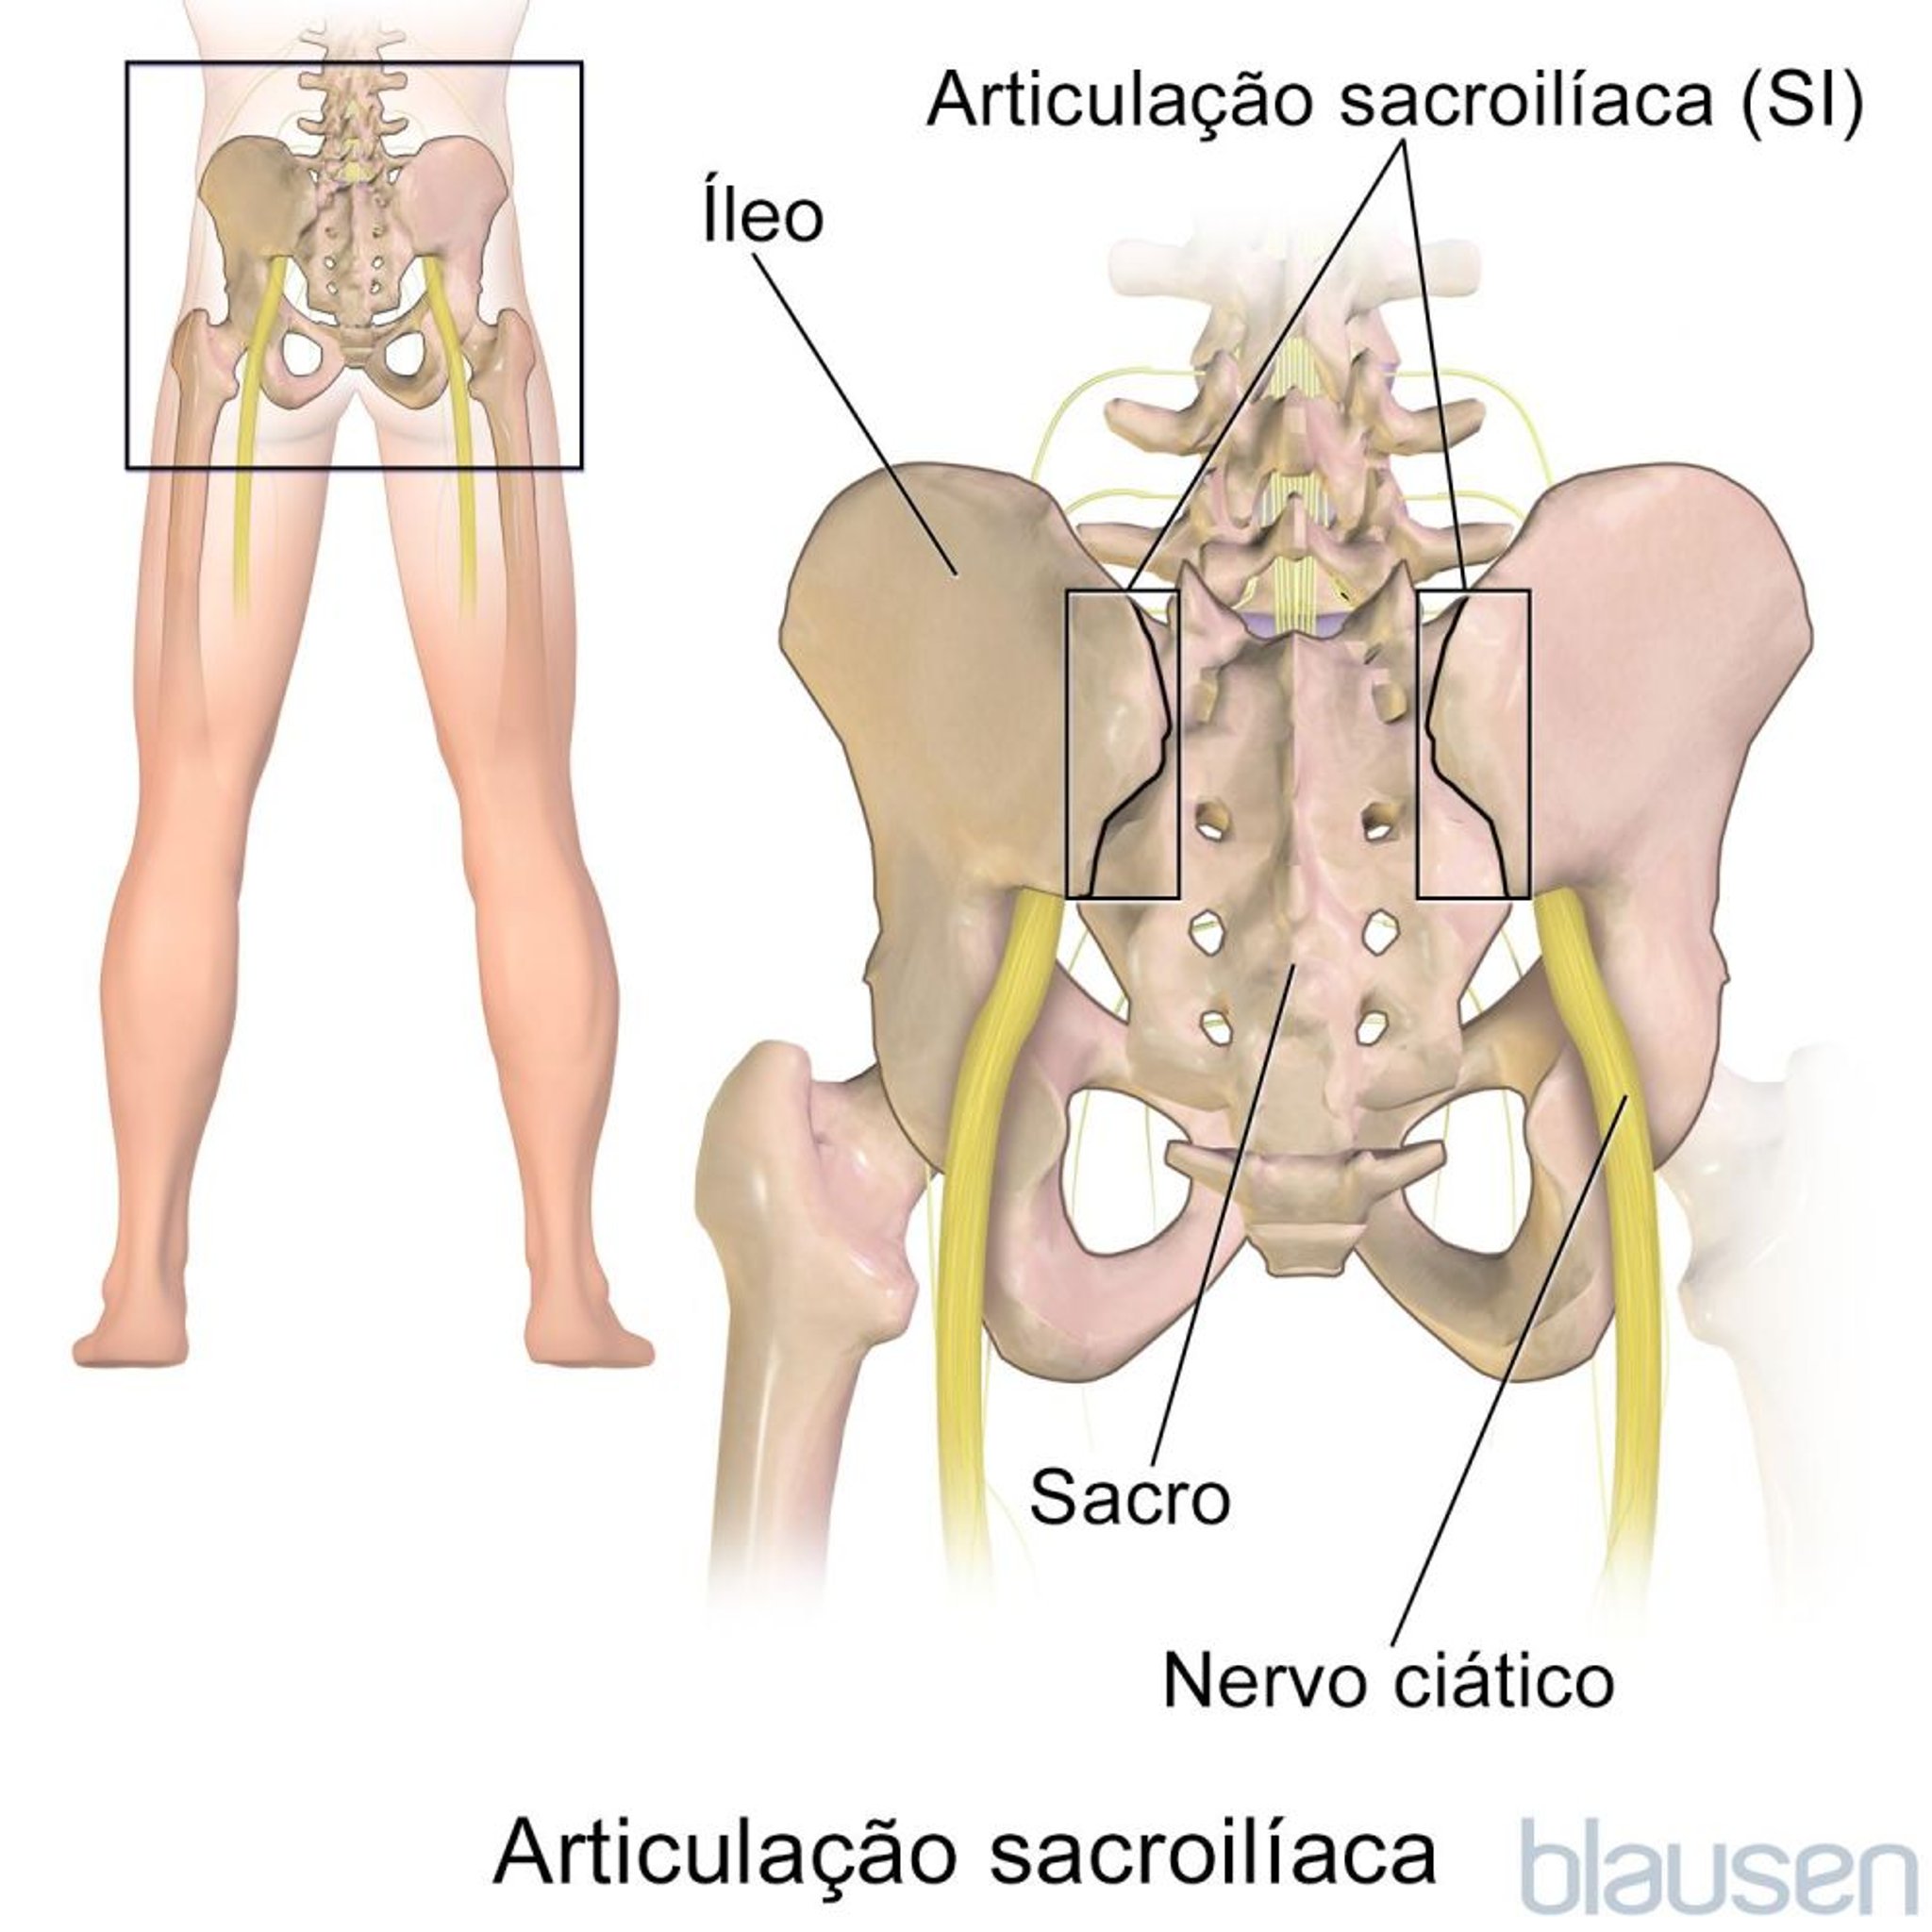 Articulação sacroilíaca